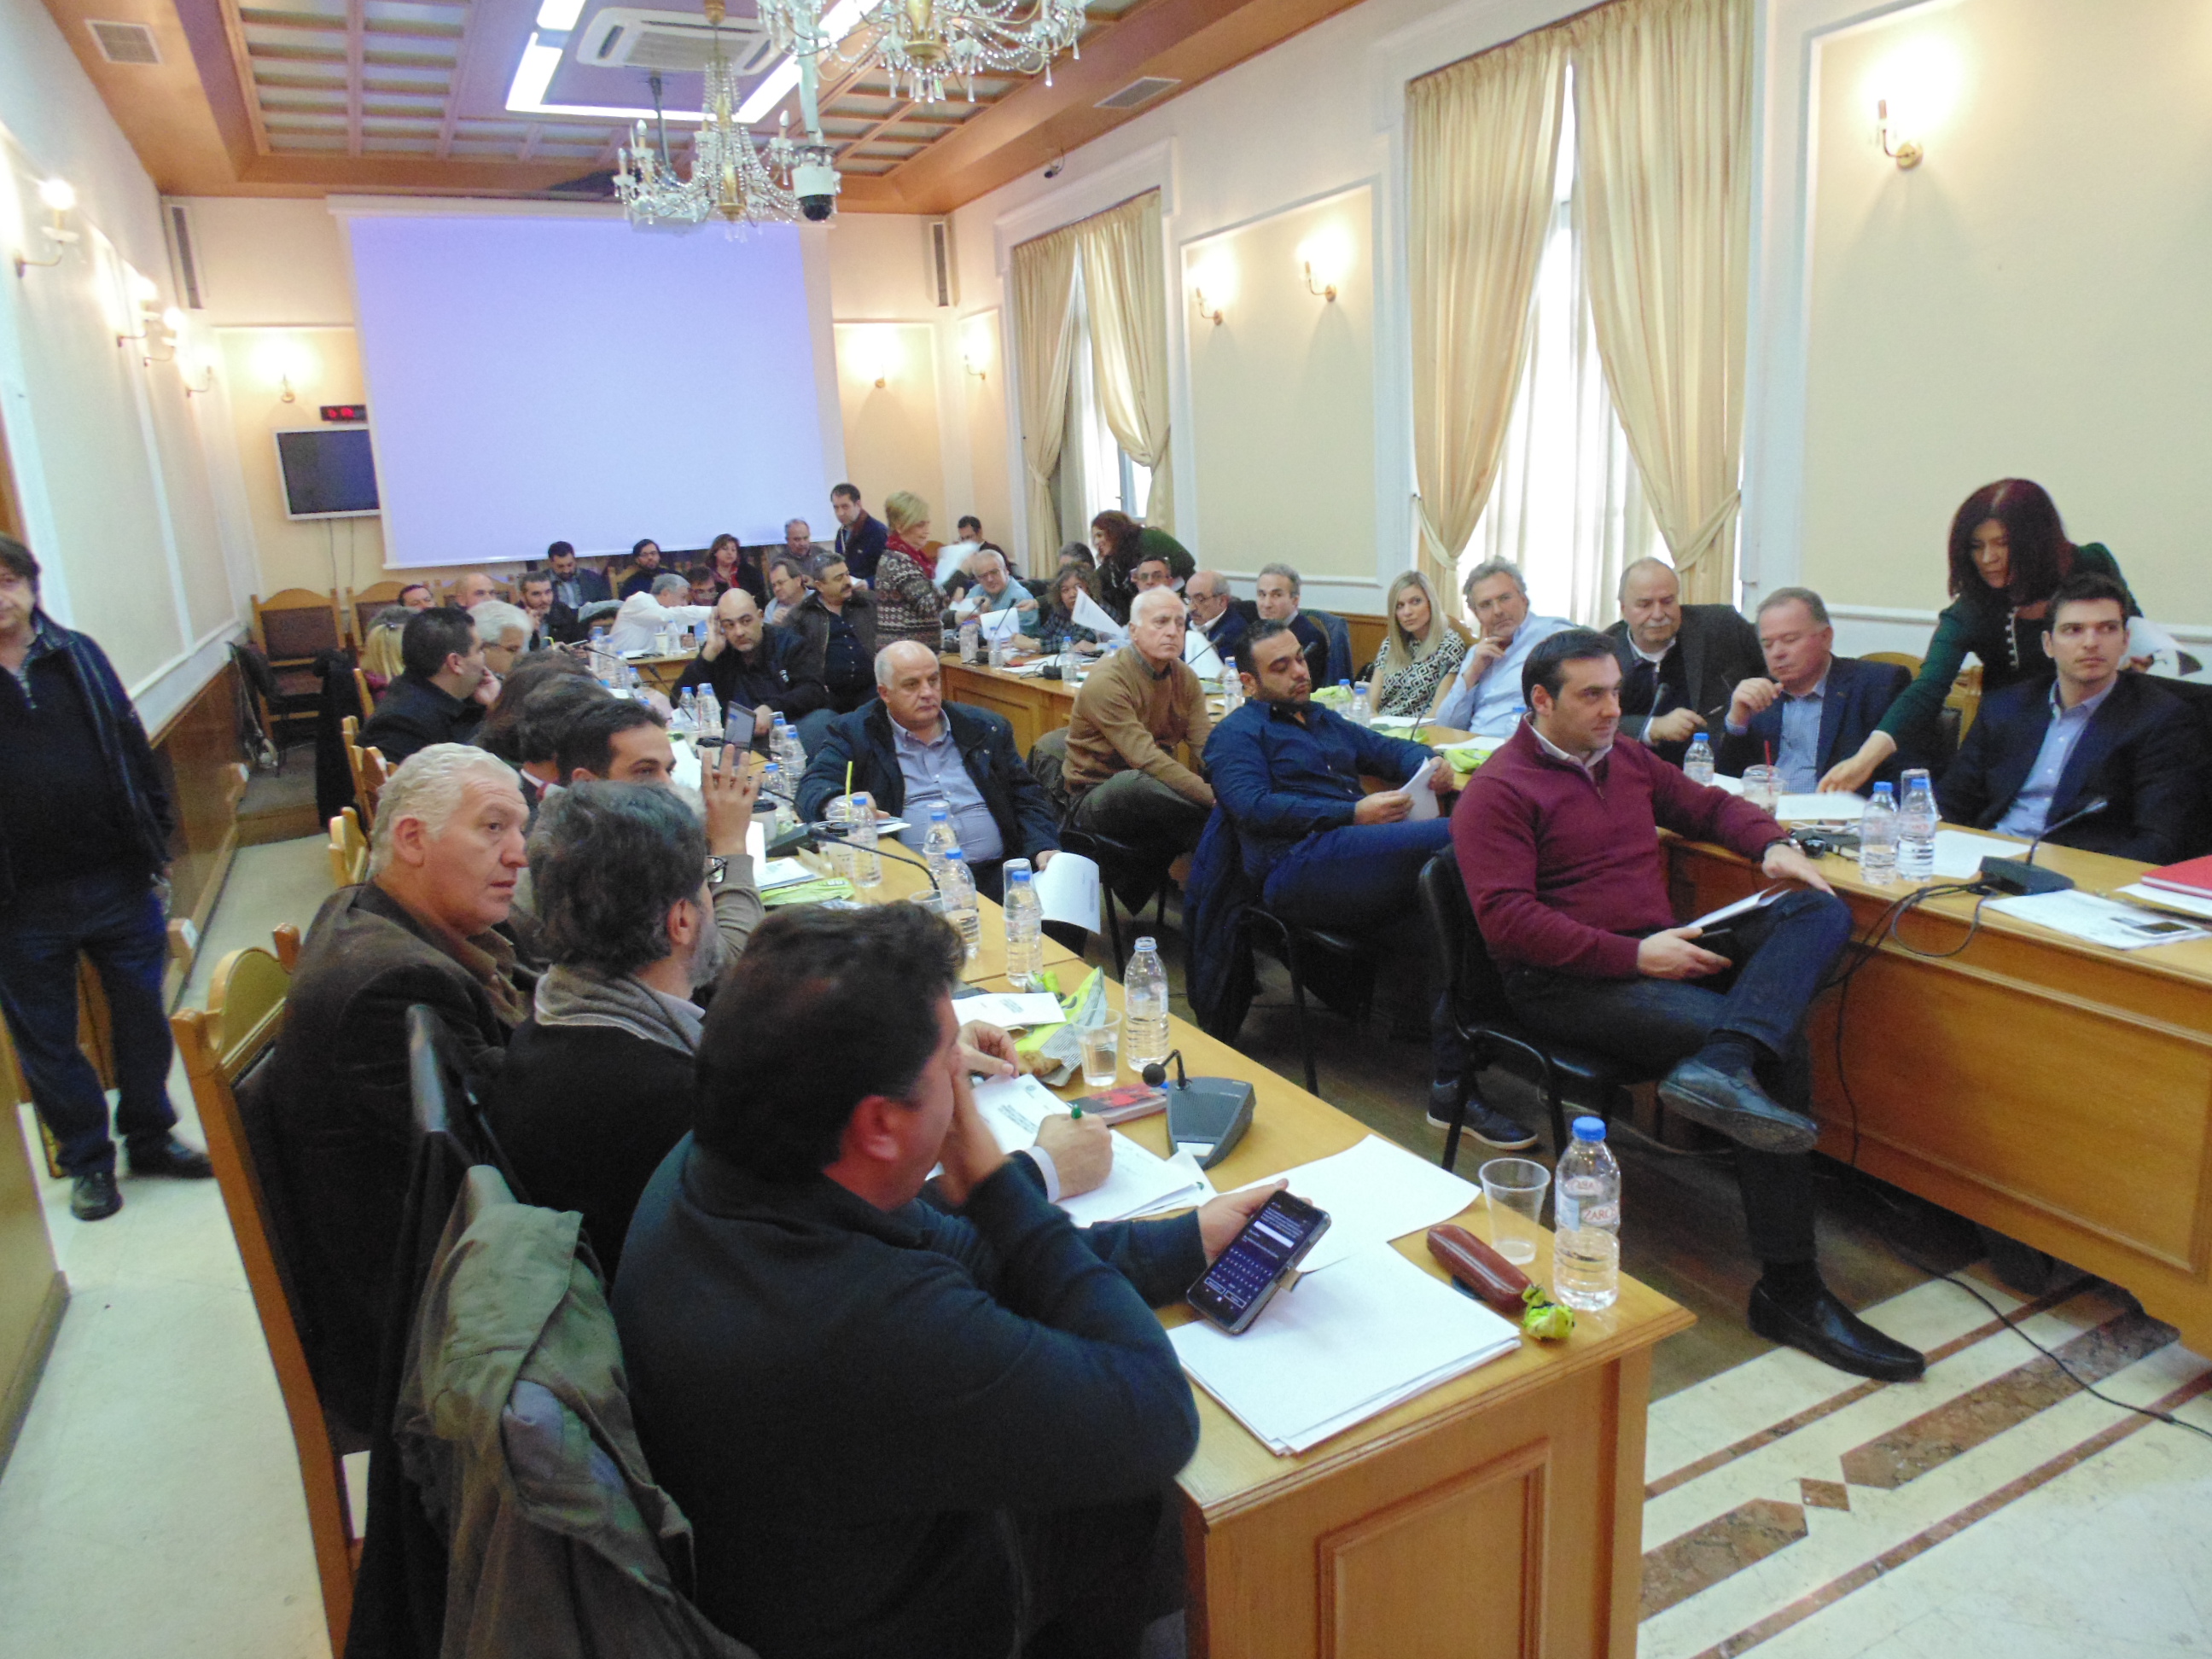 Σε εξέλιξη η συνεδρίαση του Περιφερειακού Συμβουλίου Κρήτης